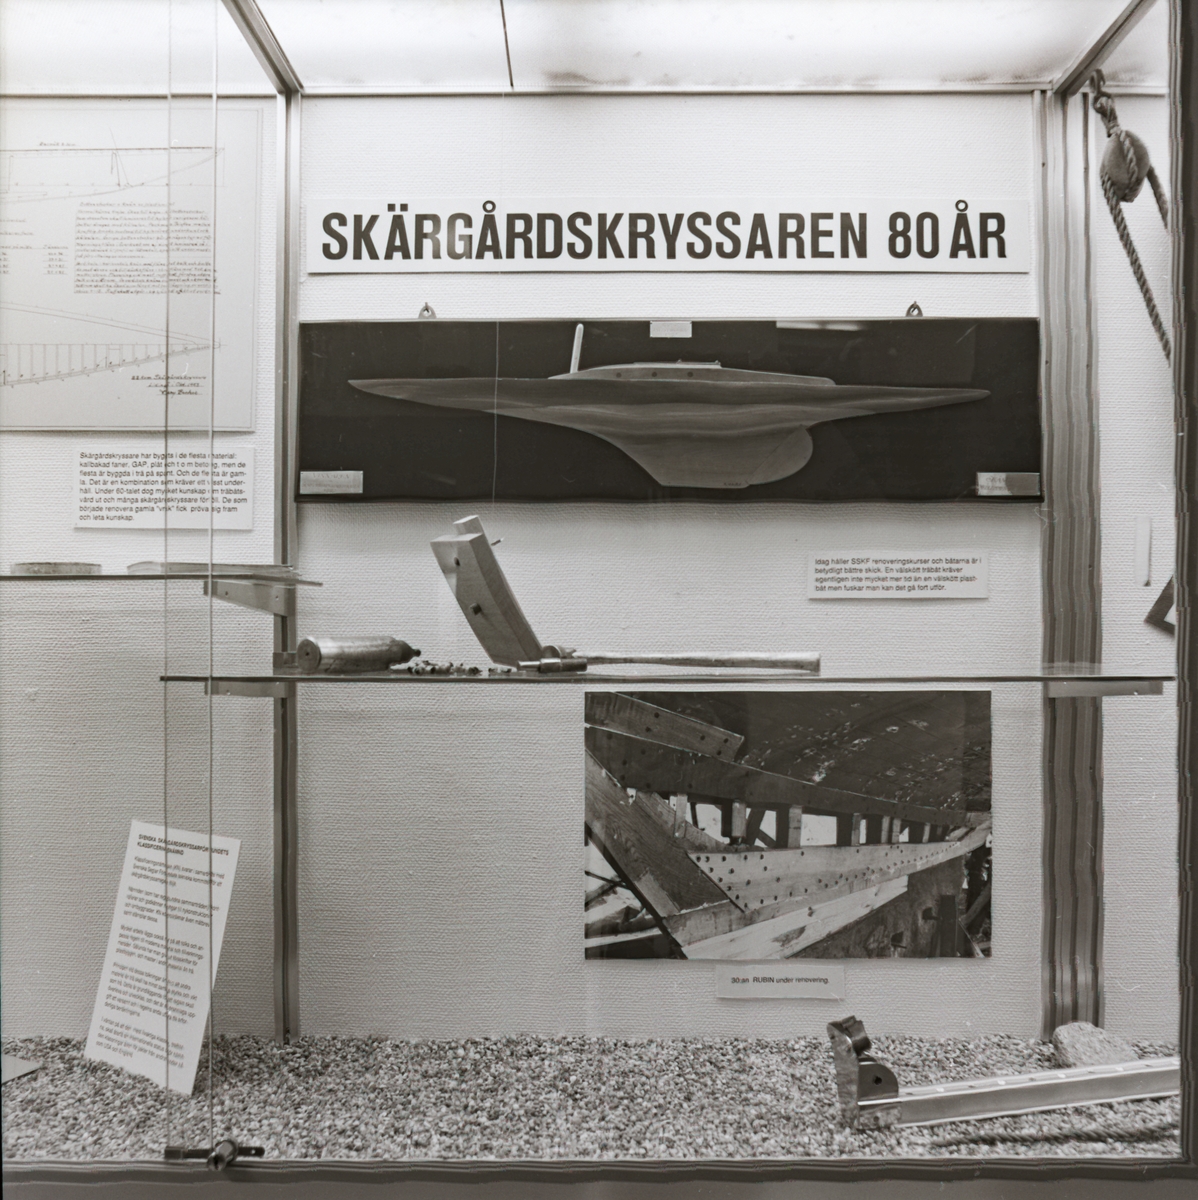 Utställningen "Skärgårdskryssaren 80 år" i trappmonter. Detaljbild av montern med halvmodell i fokus.